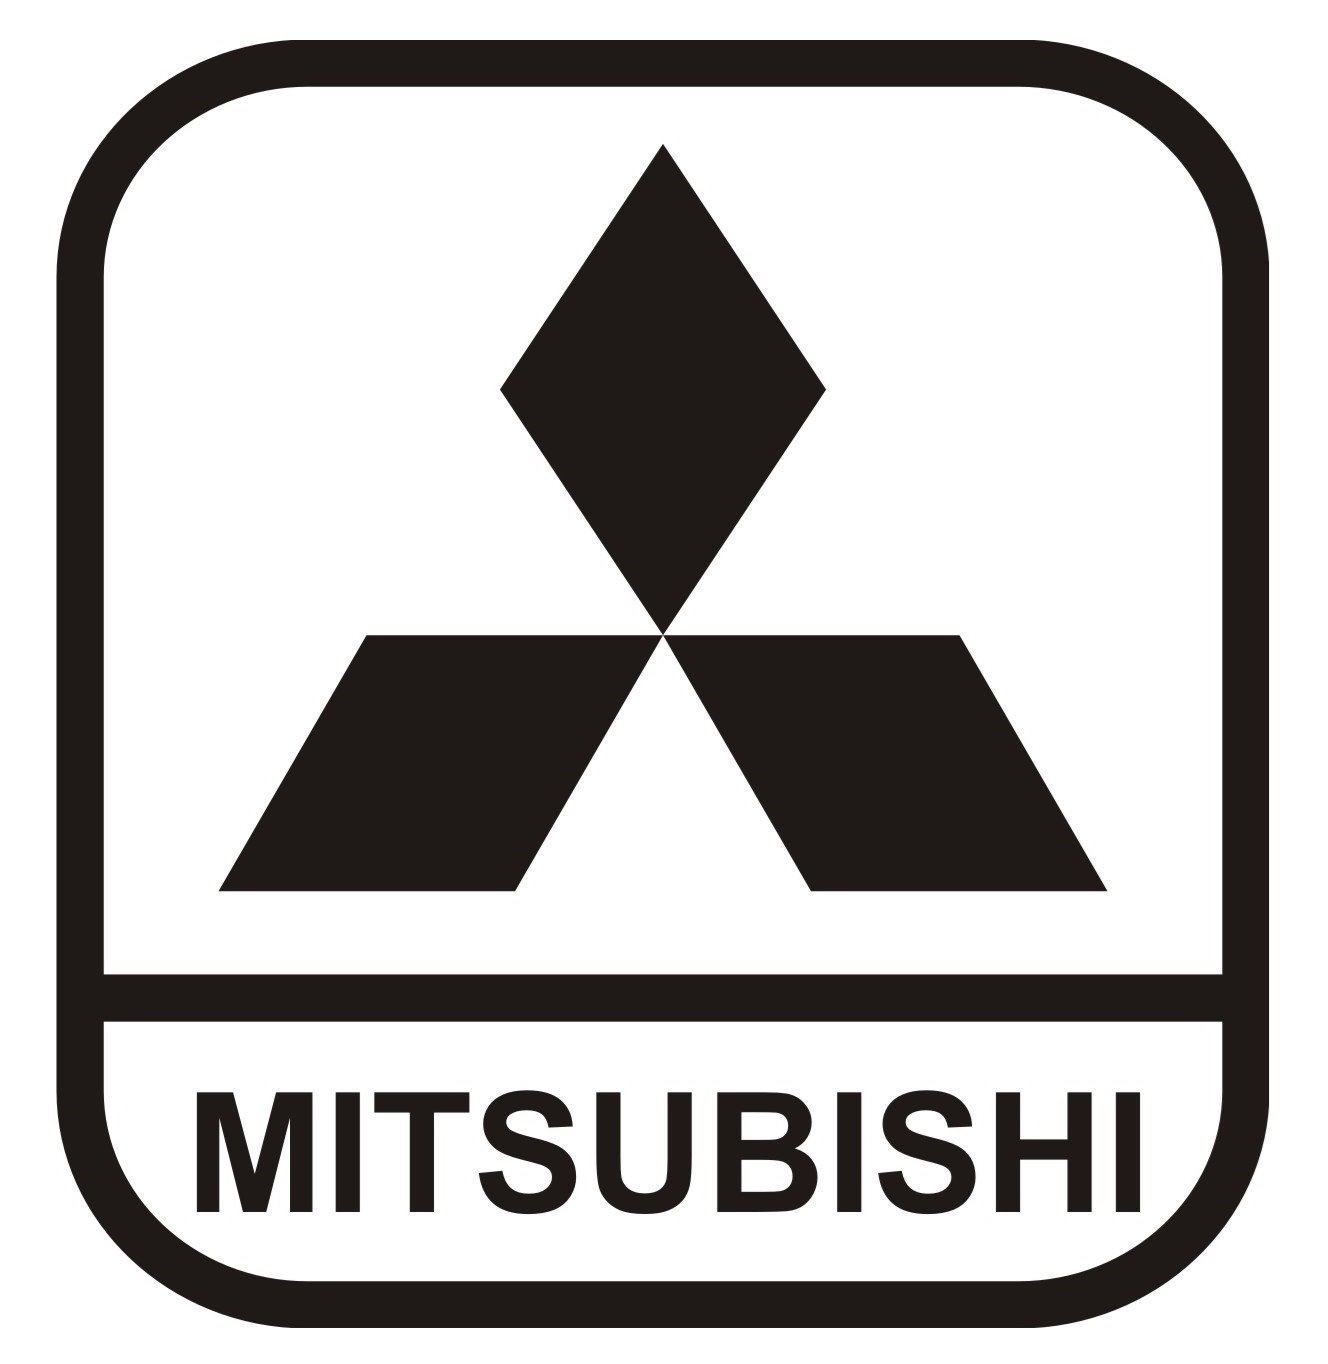 Mitsubishi название. Знак Митсубиси. Mitsubishi logo. Марка машины Мицубиси значок. Mitsubishi логотип Mitsubishi.